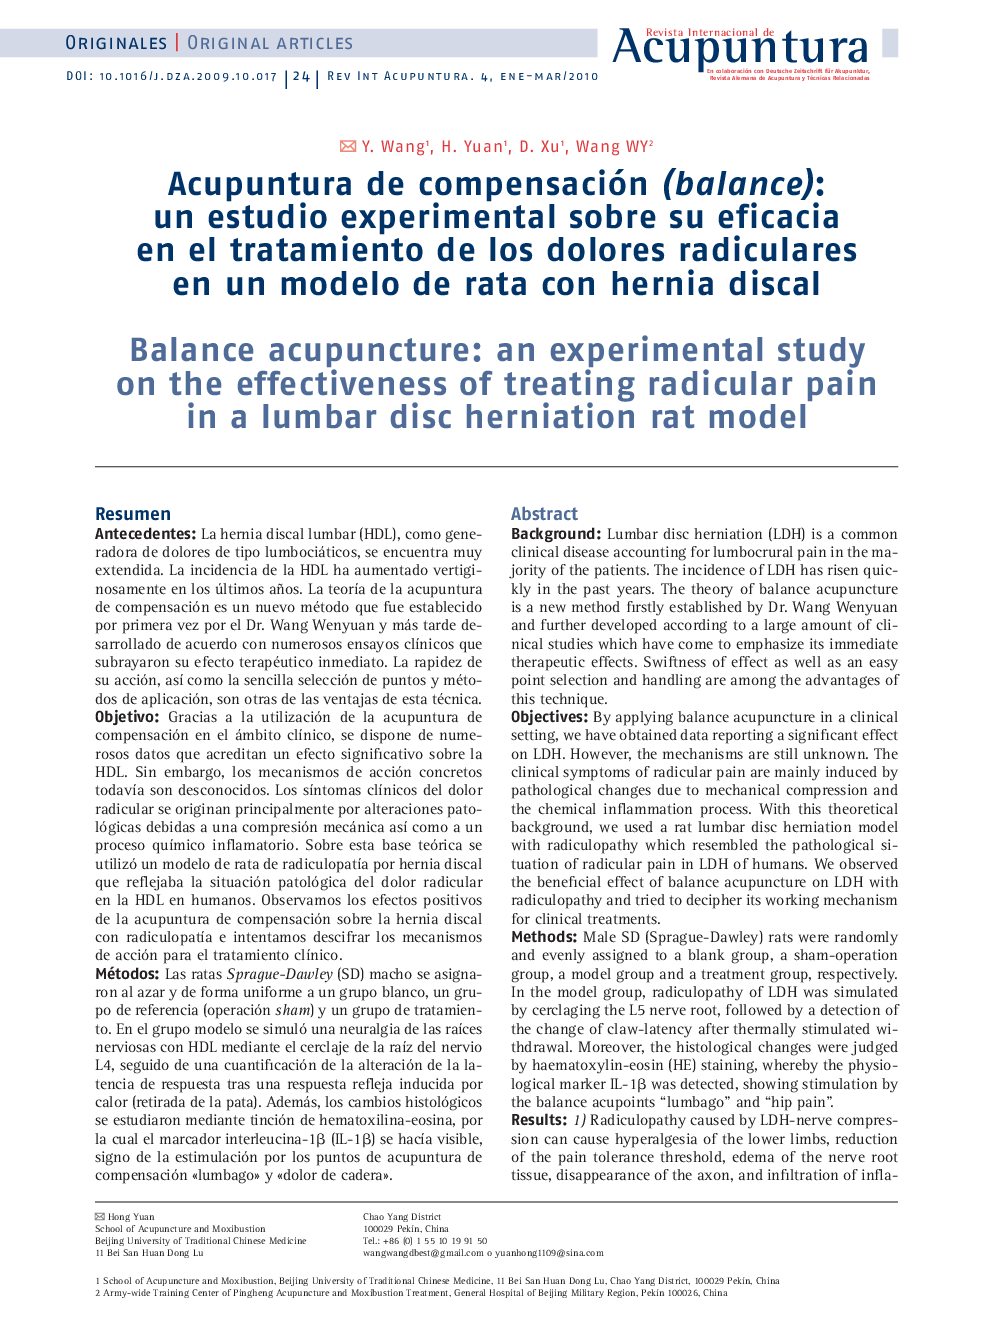 Acupuntura de compensación (balance): un estudio experimental sobre su eficacia en el tratamiento de los dolores radiculares en un modelo de rata con hernia discal